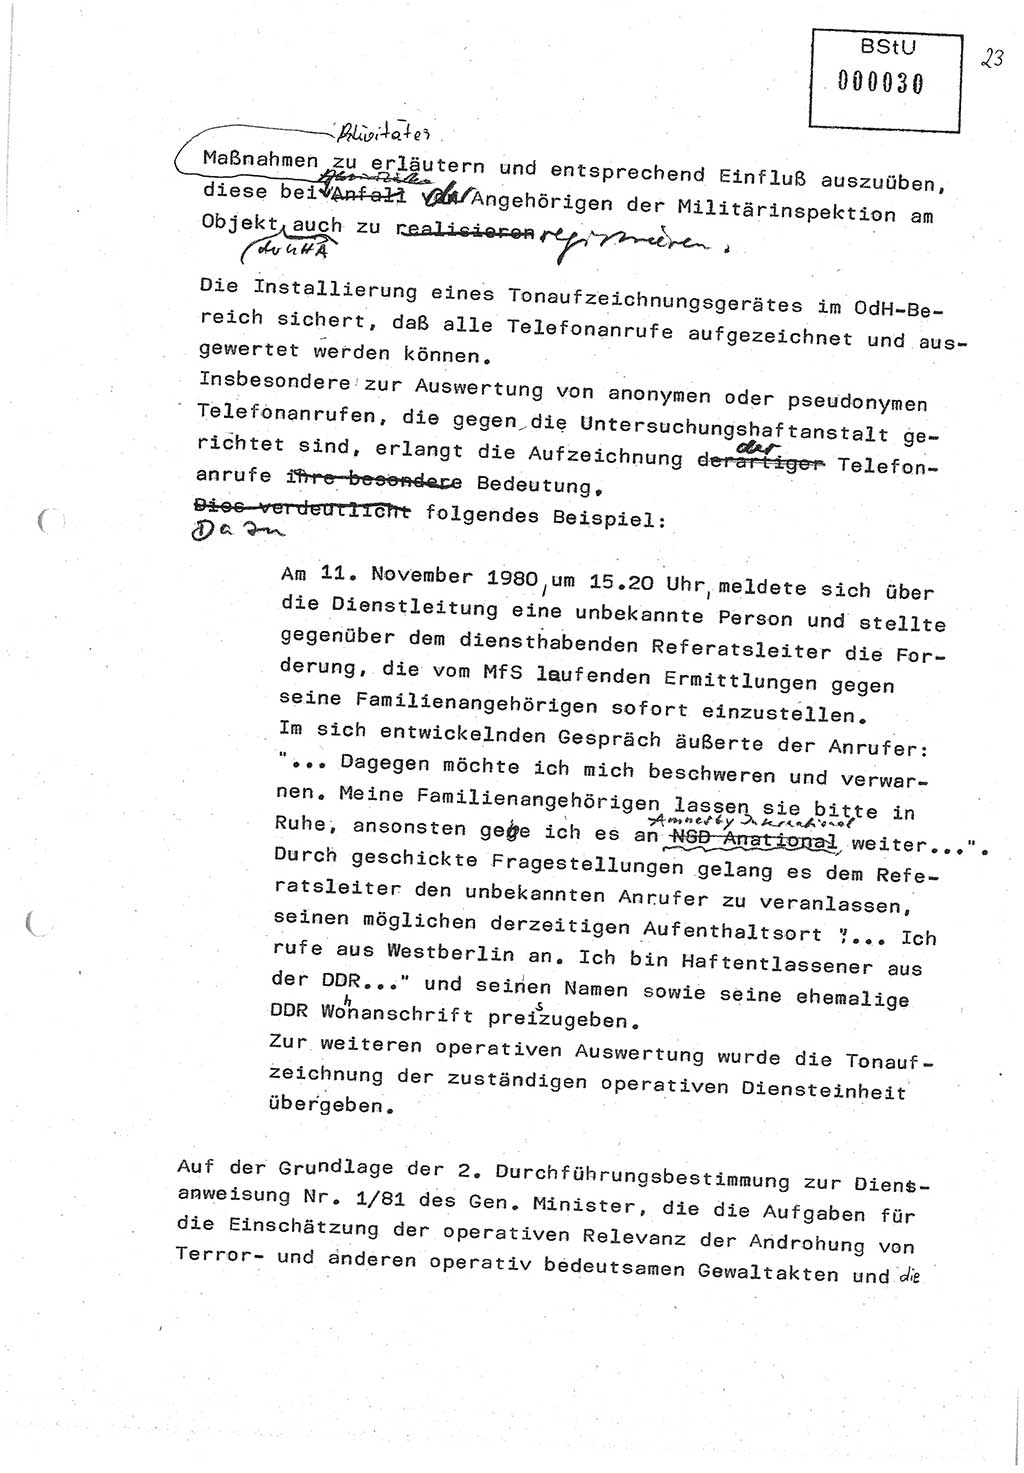 Diplomarbeit (Entwurf) Oberleutnant Peter Parke (Abt. ⅩⅣ), Ministerium für Staatssicherheit (MfS) [Deutsche Demokratische Republik (DDR)], Juristische Hochschule (JHS), Geheime Verschlußsache (GVS) o001-98/86, Potsdam 1986, Seite 30 (Dipl.-Arb. MfS DDR JHS GVS o001-98/86 1986, S. 30)